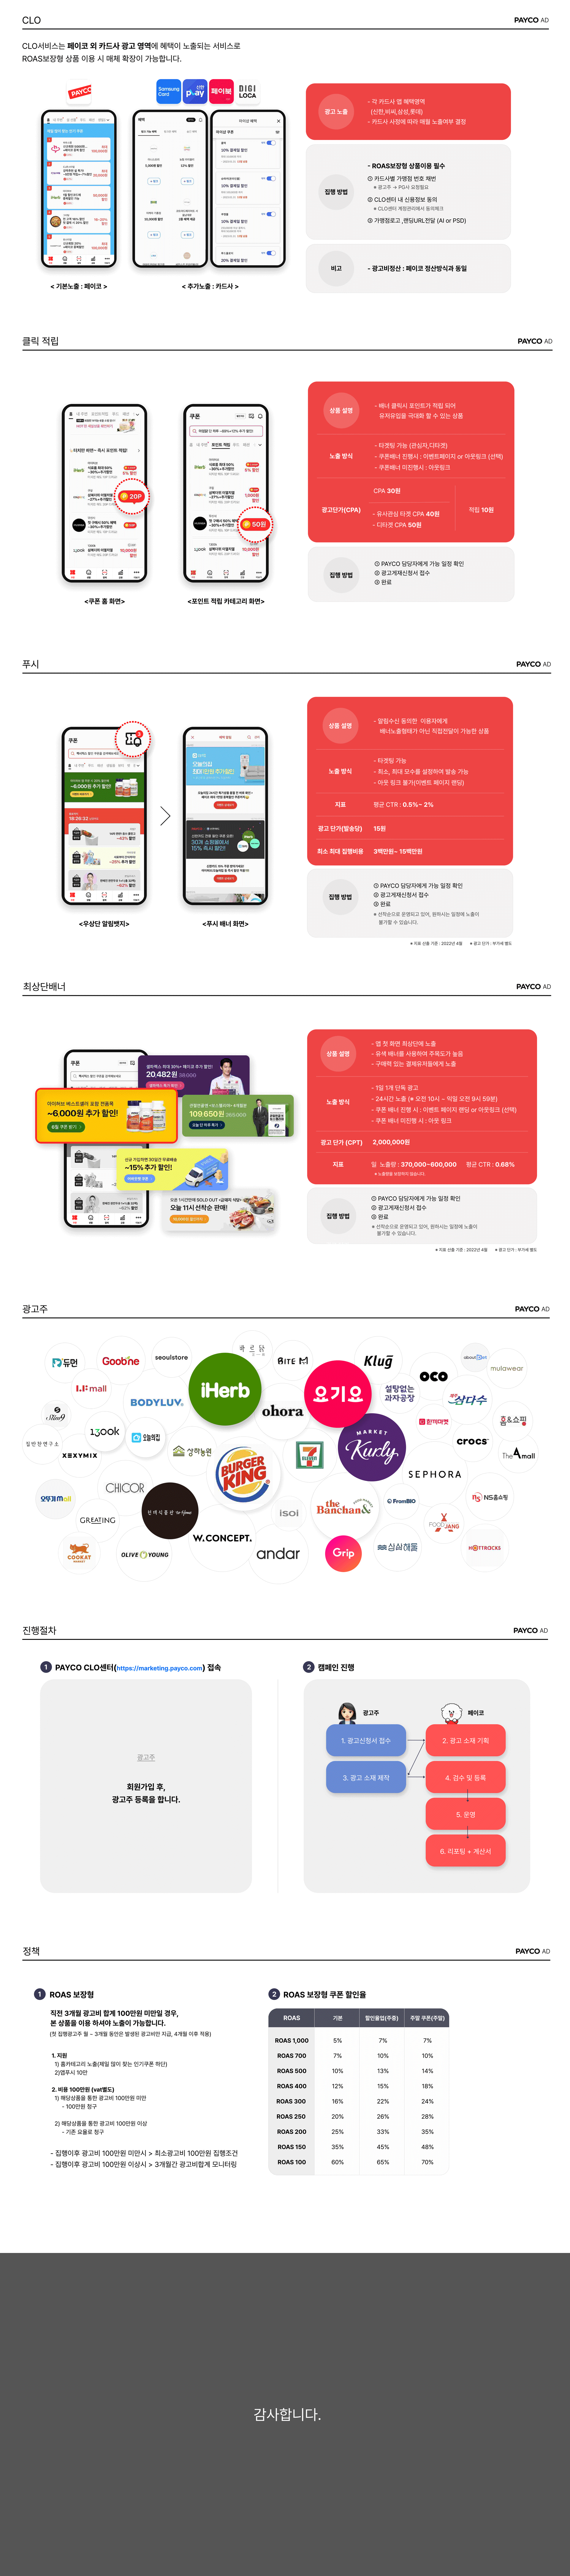 페이코 ROAS 보장형 광고 상품 소개 위픽업